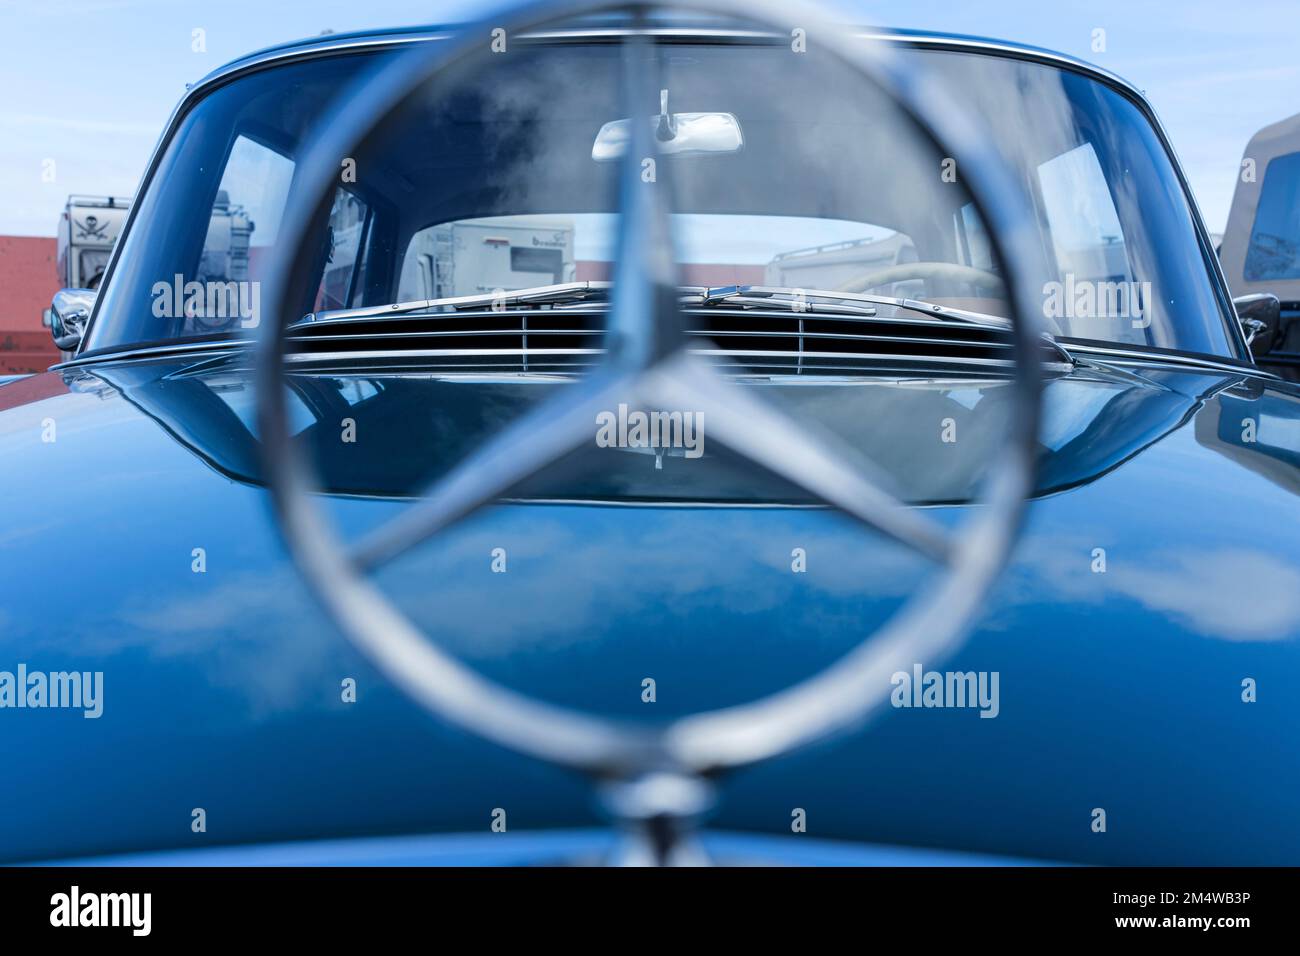 Emblème Mercedes Benz sur le capot d'une voiture bleue Banque D'Images